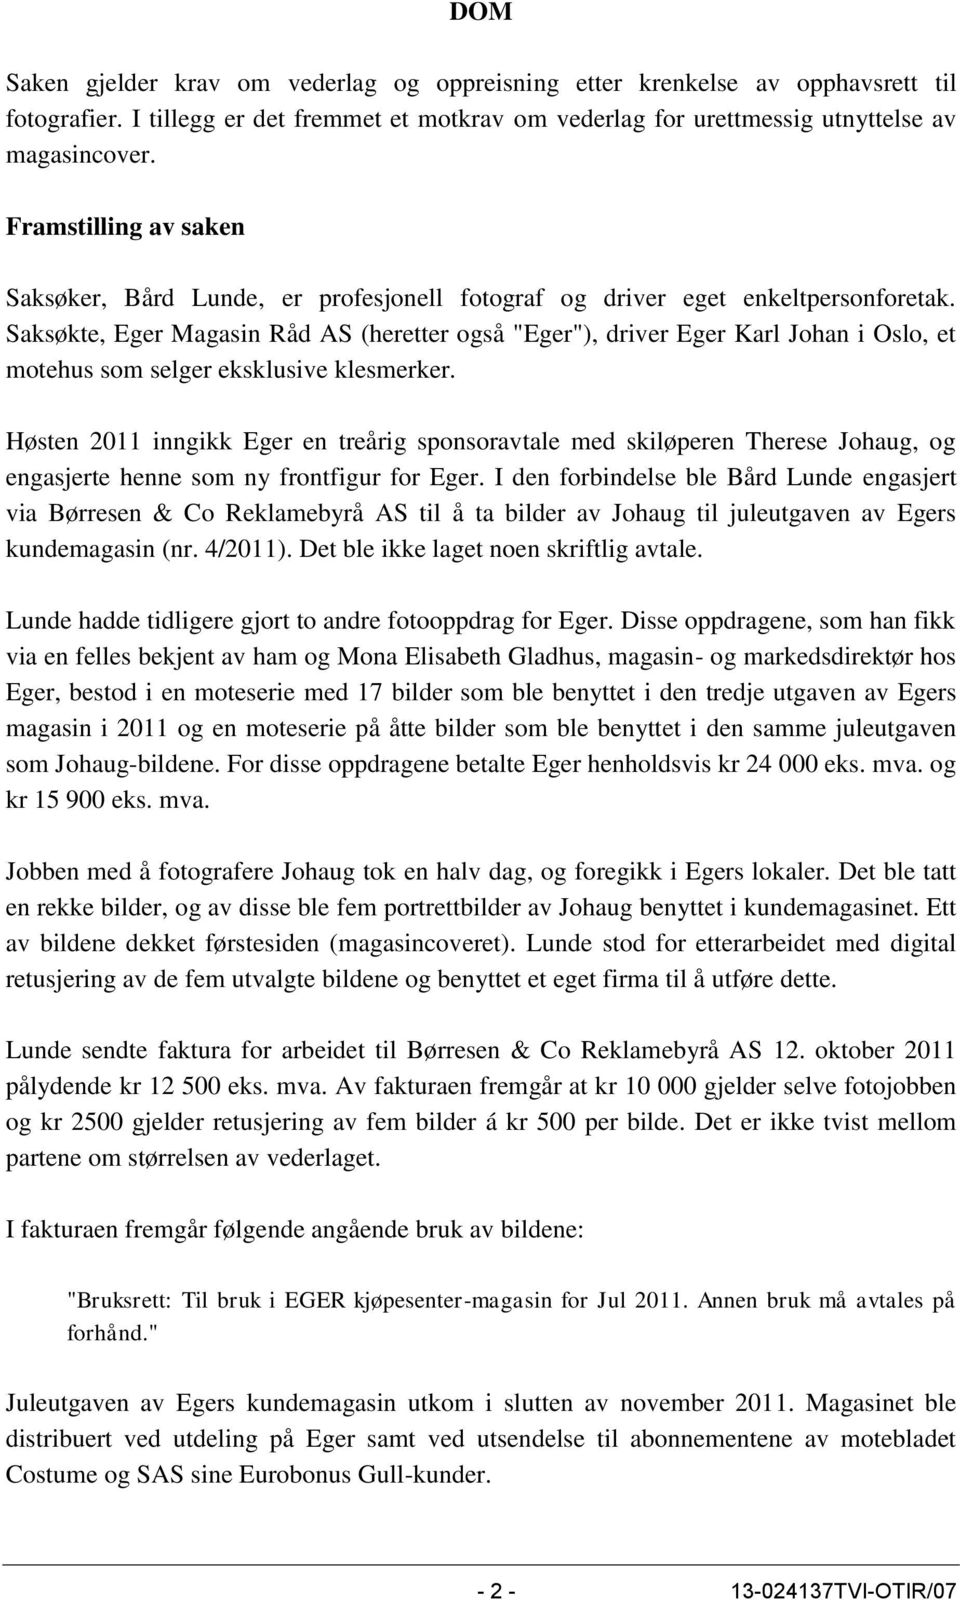 Saksøkte, Eger Magasin Råd AS (heretter også "Eger"), driver Eger Karl Johan i Oslo, et motehus som selger eksklusive klesmerker.